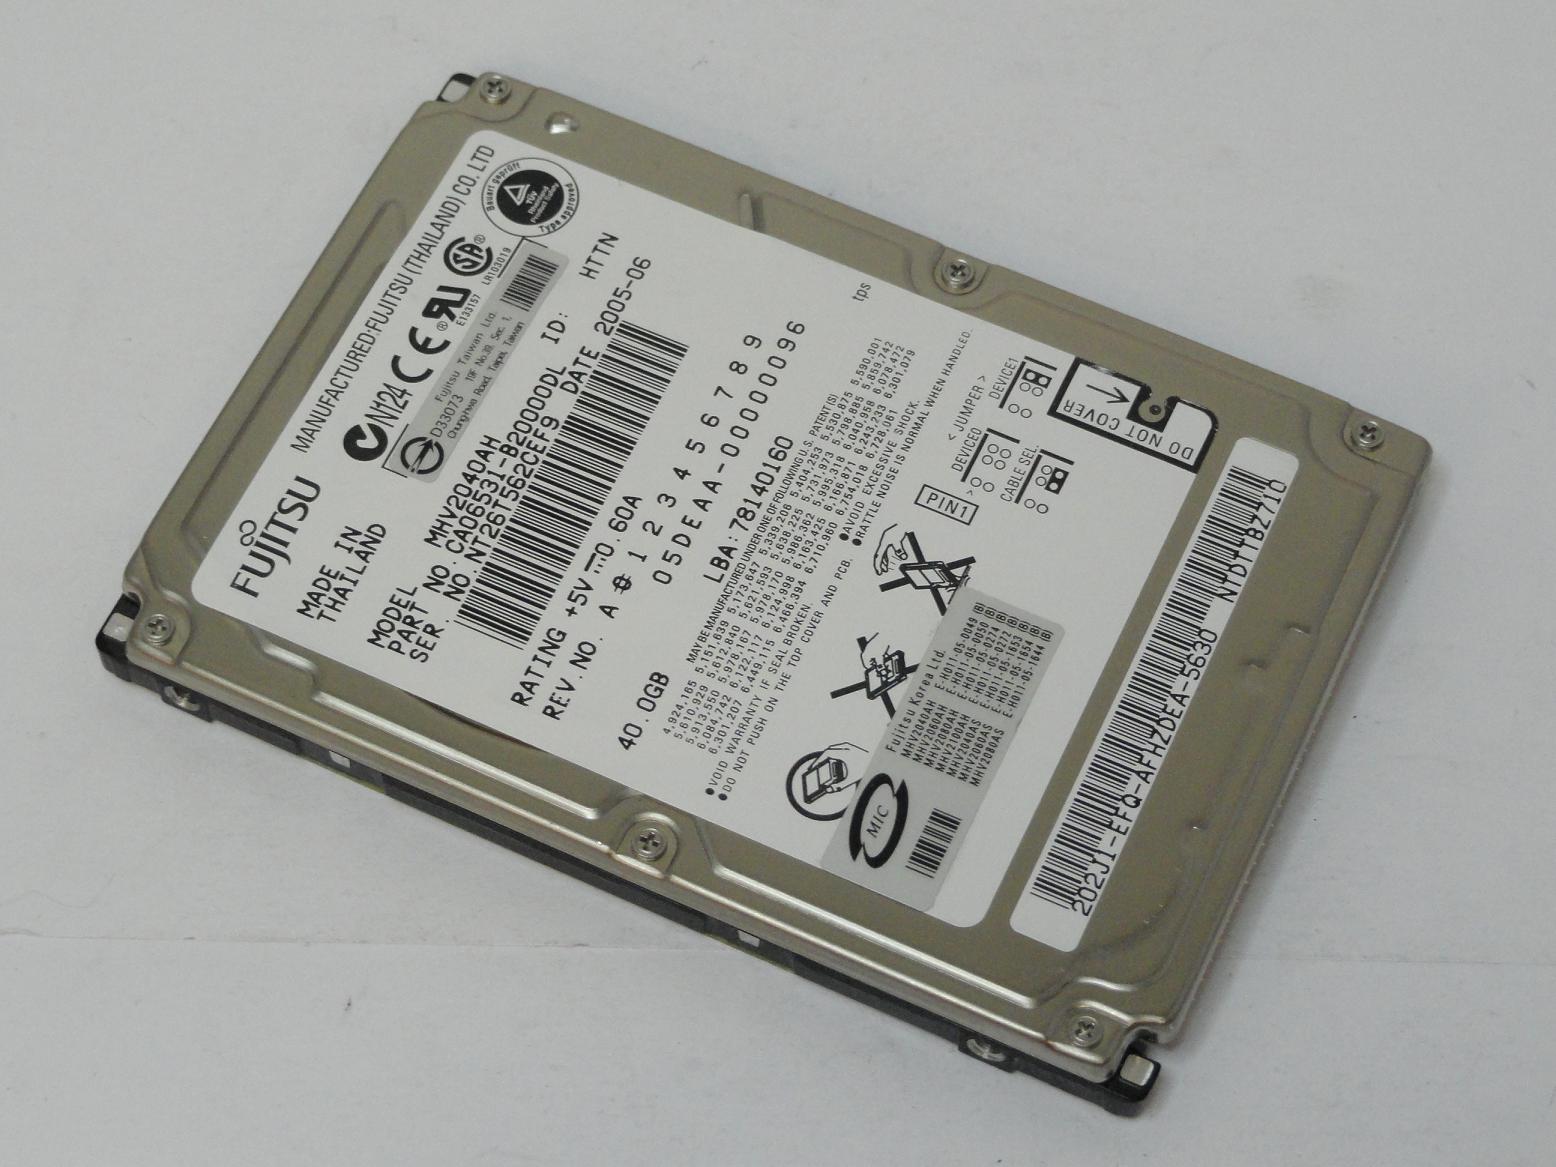 CA06531-B20000DL - Fujitsu 40GB IDE 5400rpm 2.5in HDD - Refurbished